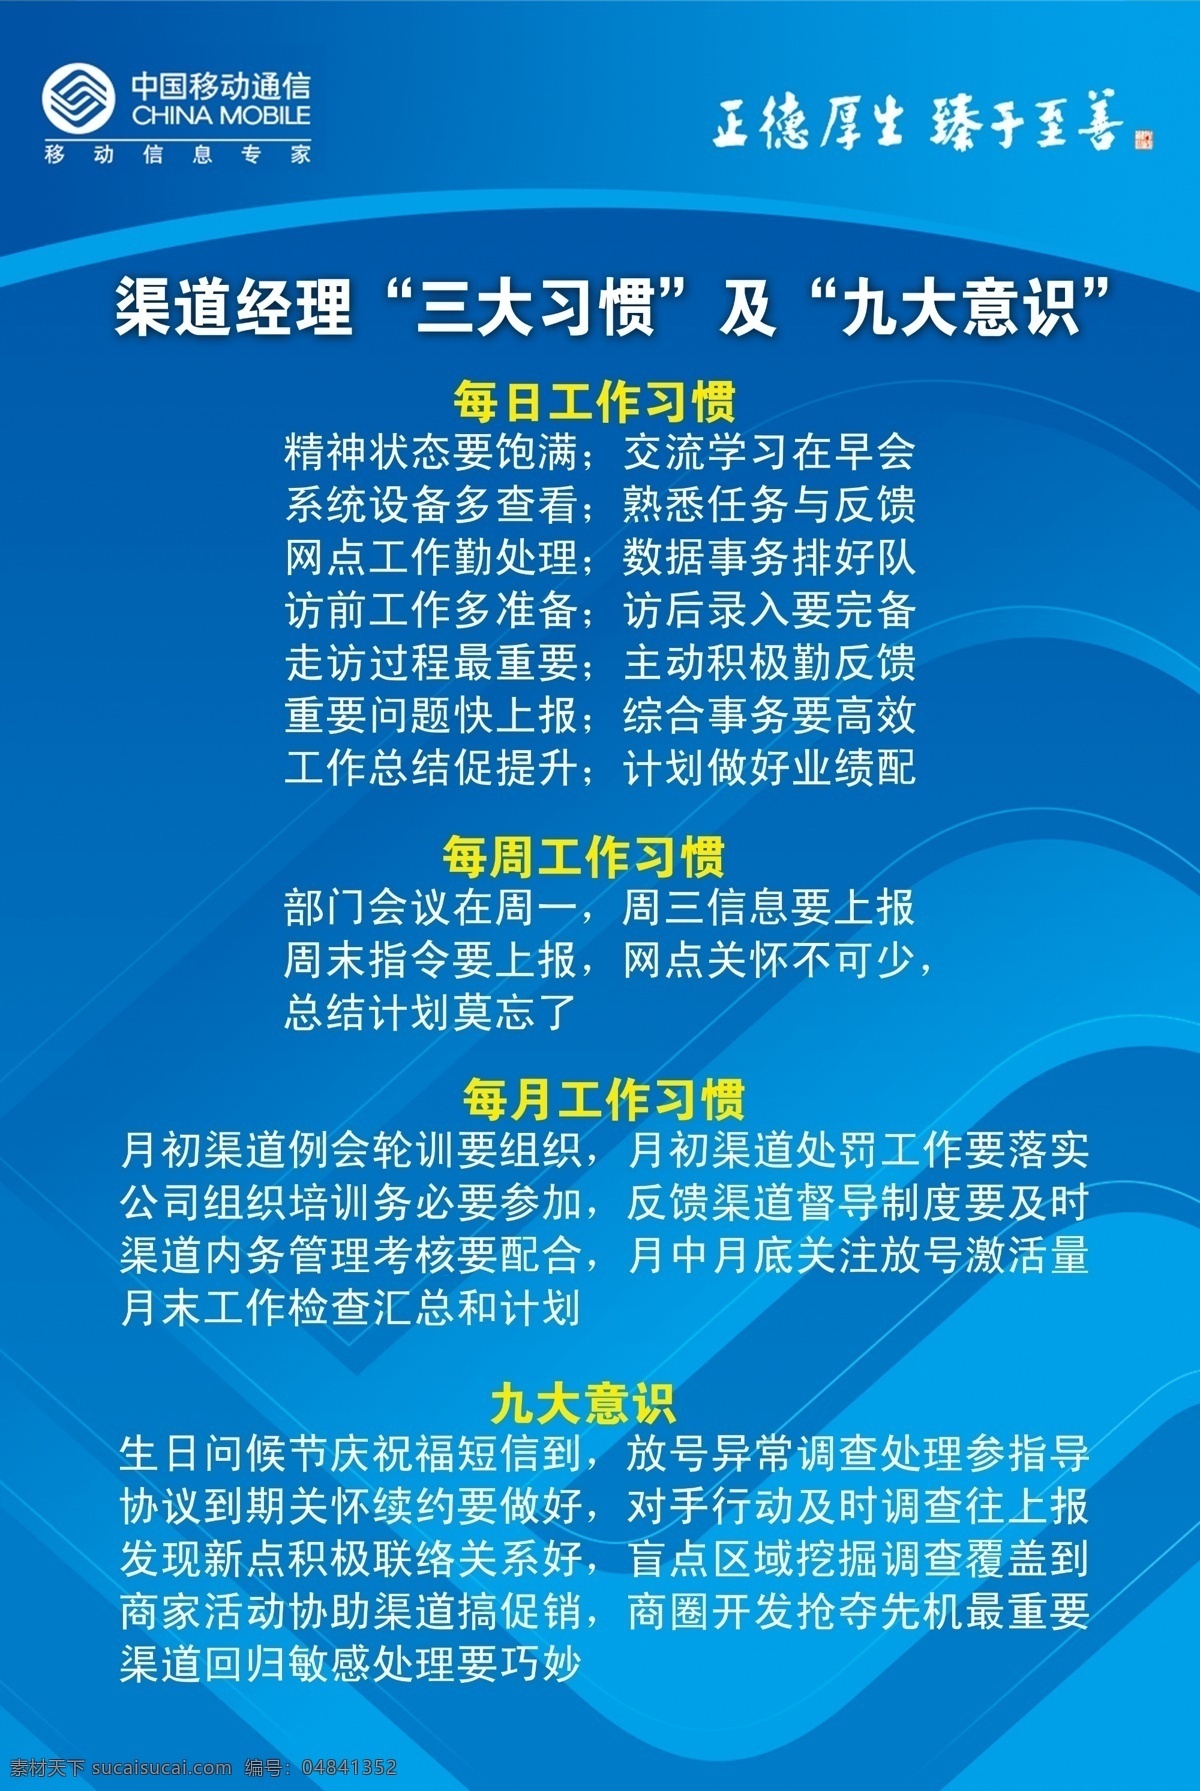 中国移动 制度 牌 三大习惯 九大意识 文化栏 展板 移动 背景 展板模板 广告设计模板 源文件 企业文化